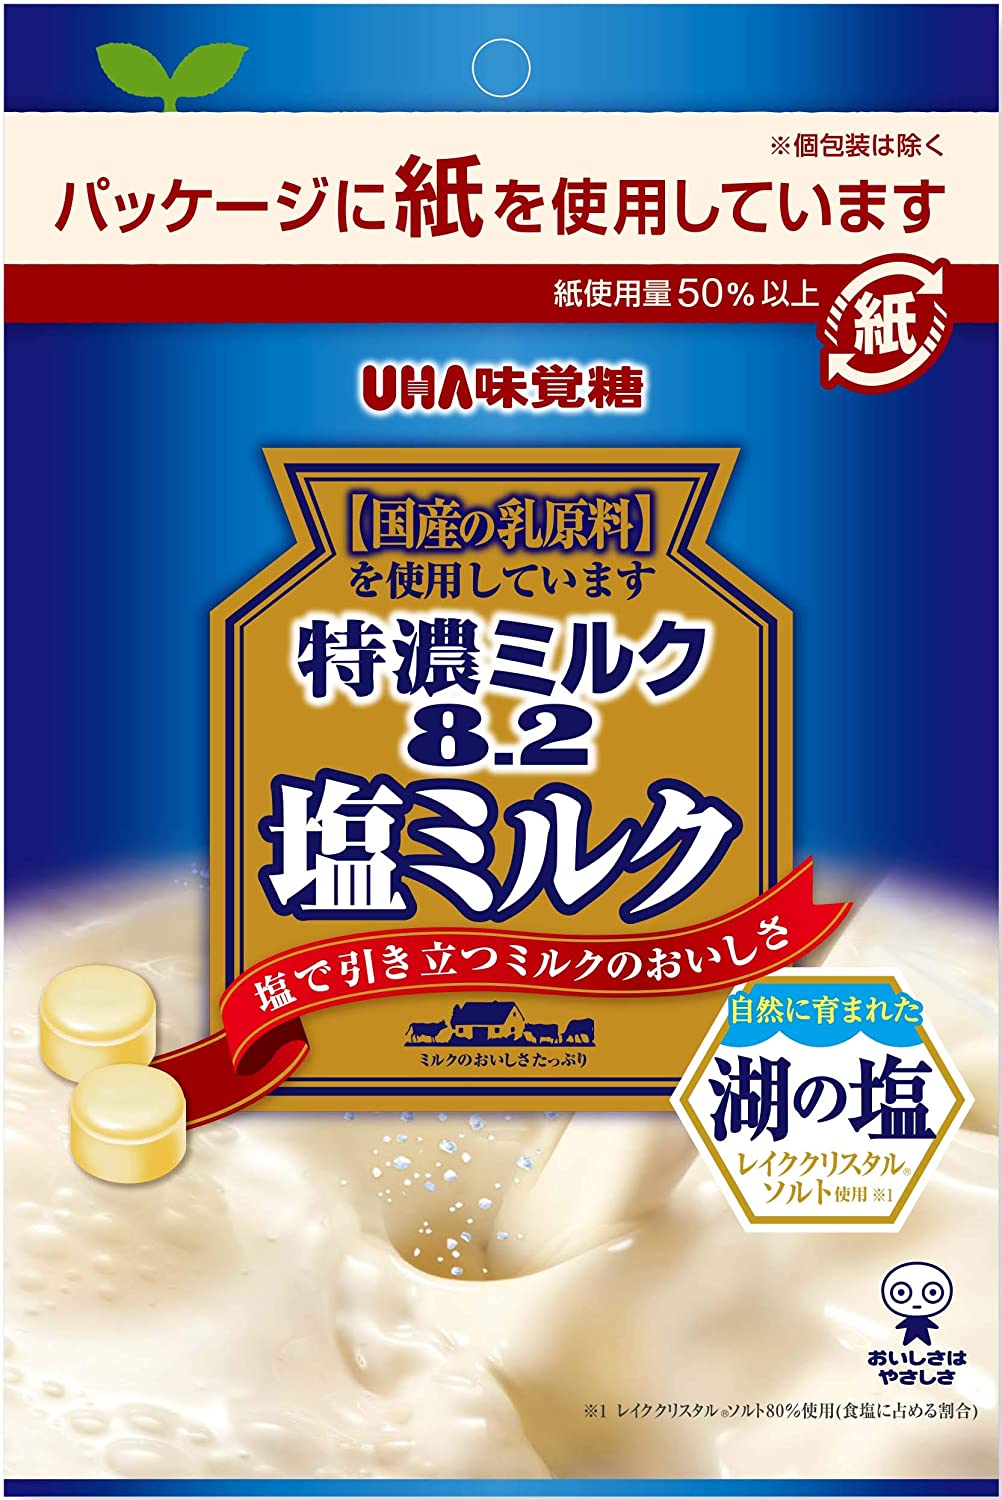 UHA味覚糖『特濃ミルク8.2 塩ミルク』